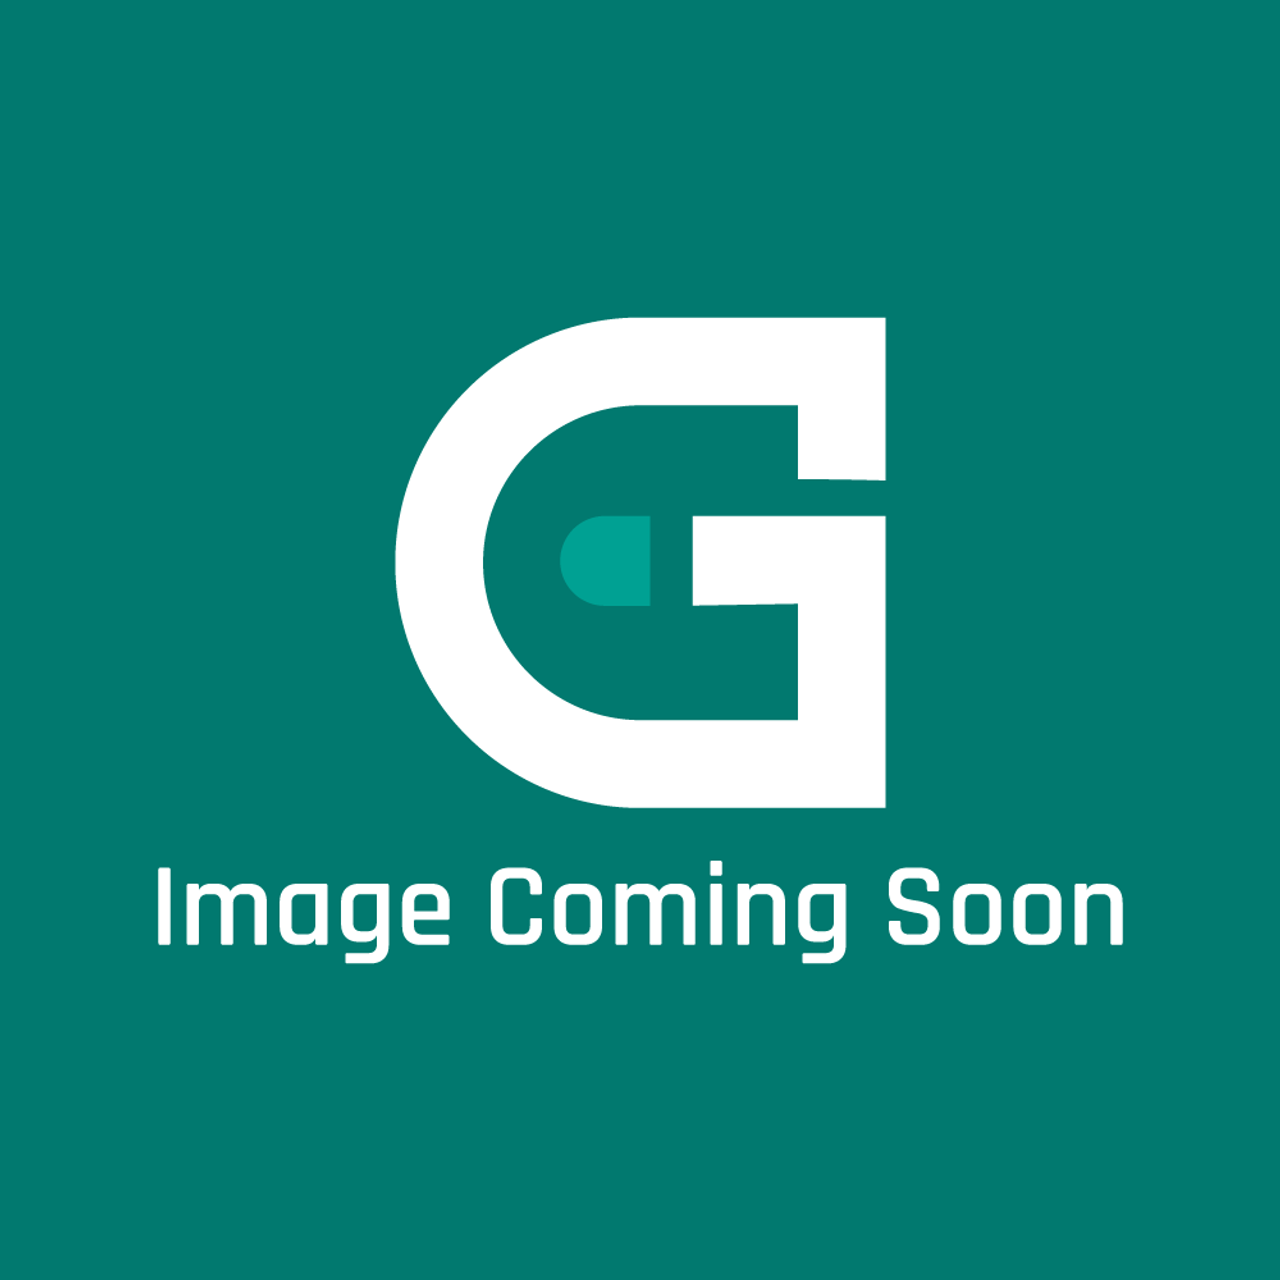 AGA Marvel R4941 - 480Ag/Al-Ckr Brn Spares Kit - Image Coming Soon!